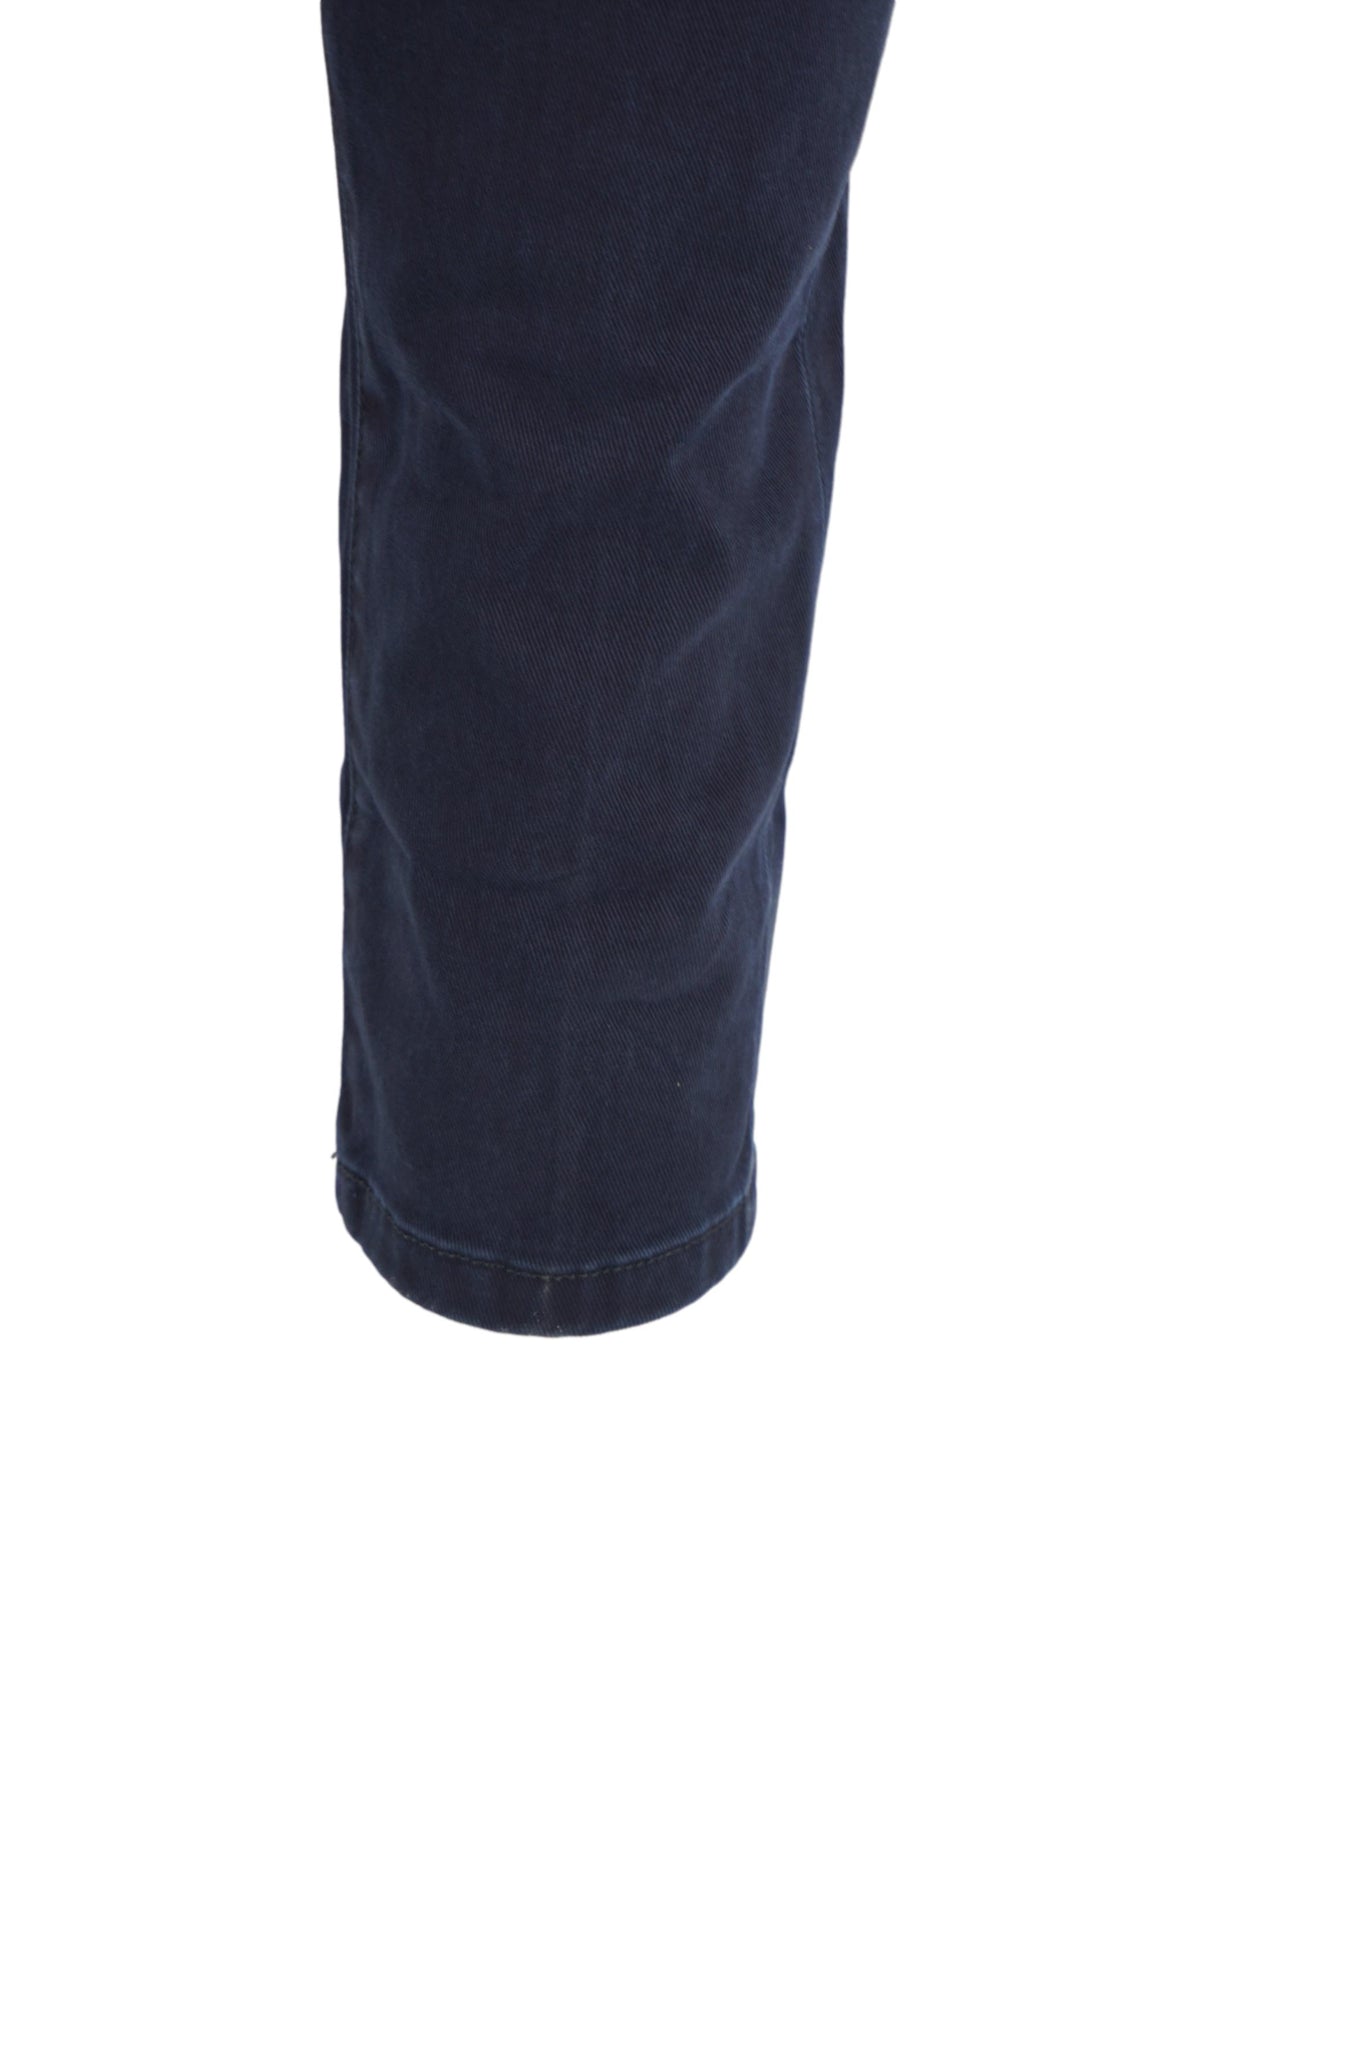 Pantalone Chino in Caldo Cotone / Blu - Ideal Moda